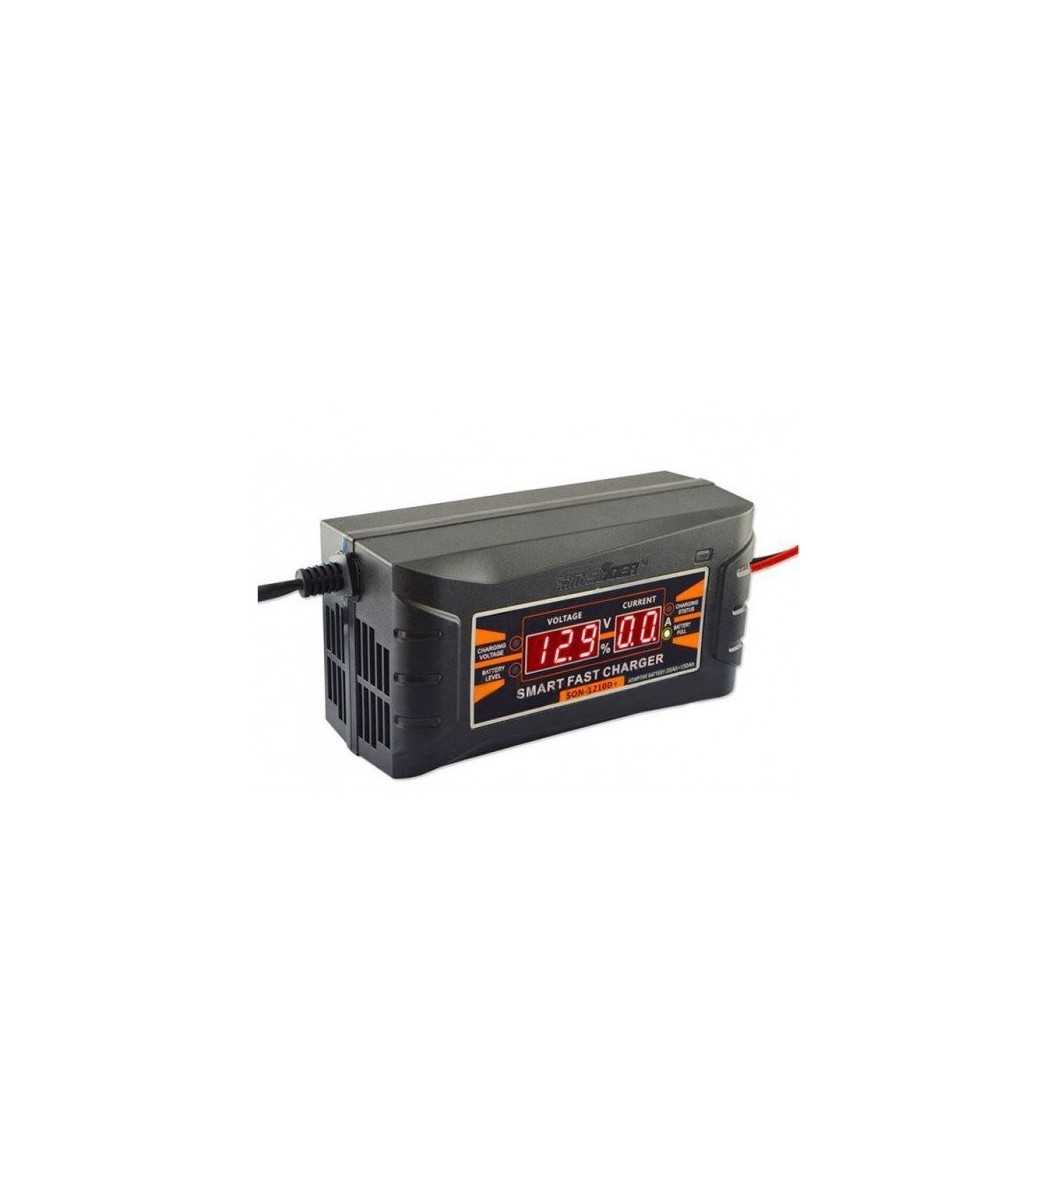 Chargeur Intelligent Pour Batterie Rechargeable 12V 5A FON-1206D